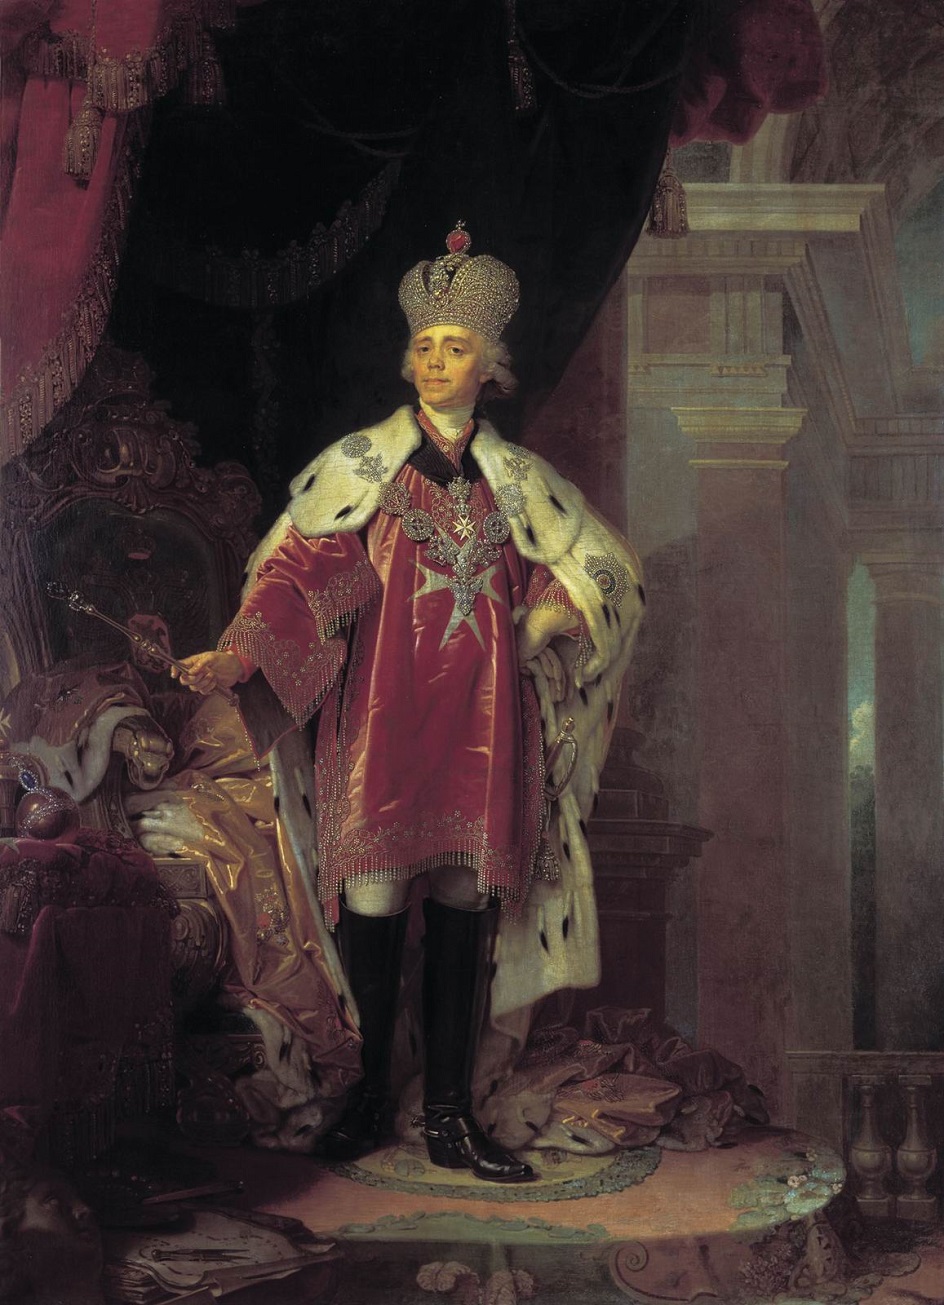 Назовите российского монарха изображенного на картине во главе войска на коне